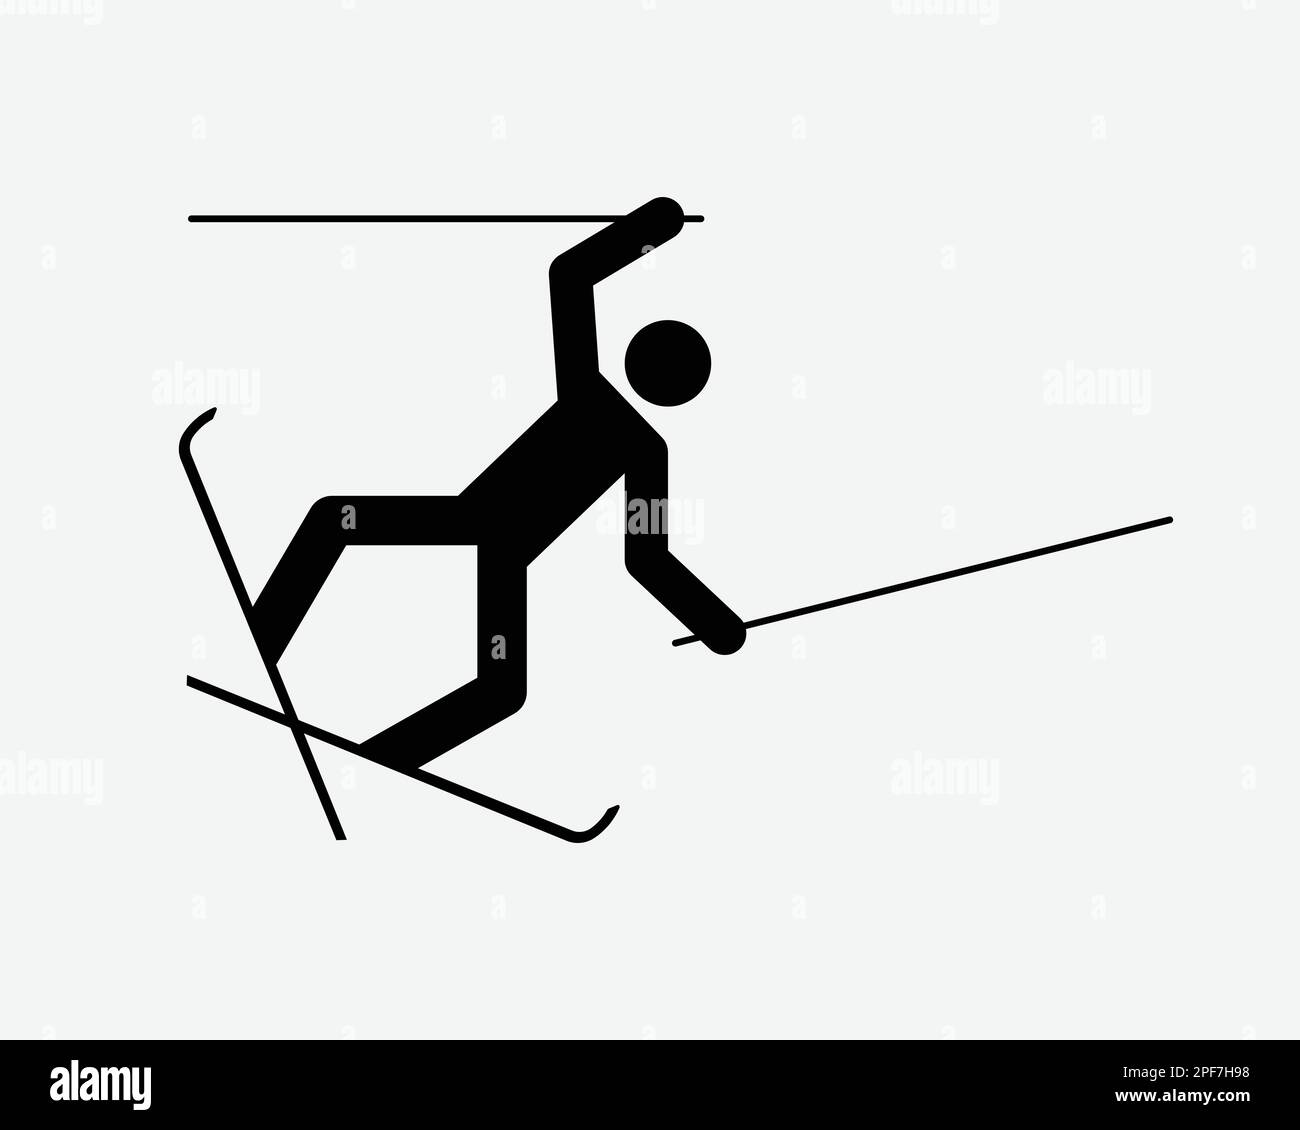 Chute de ski chute accident voyage perdre équilibre Noir blanc Silhouette symbole icône signe graphique Clipart Illustration Illustration pictogramme vecteur Illustration de Vecteur